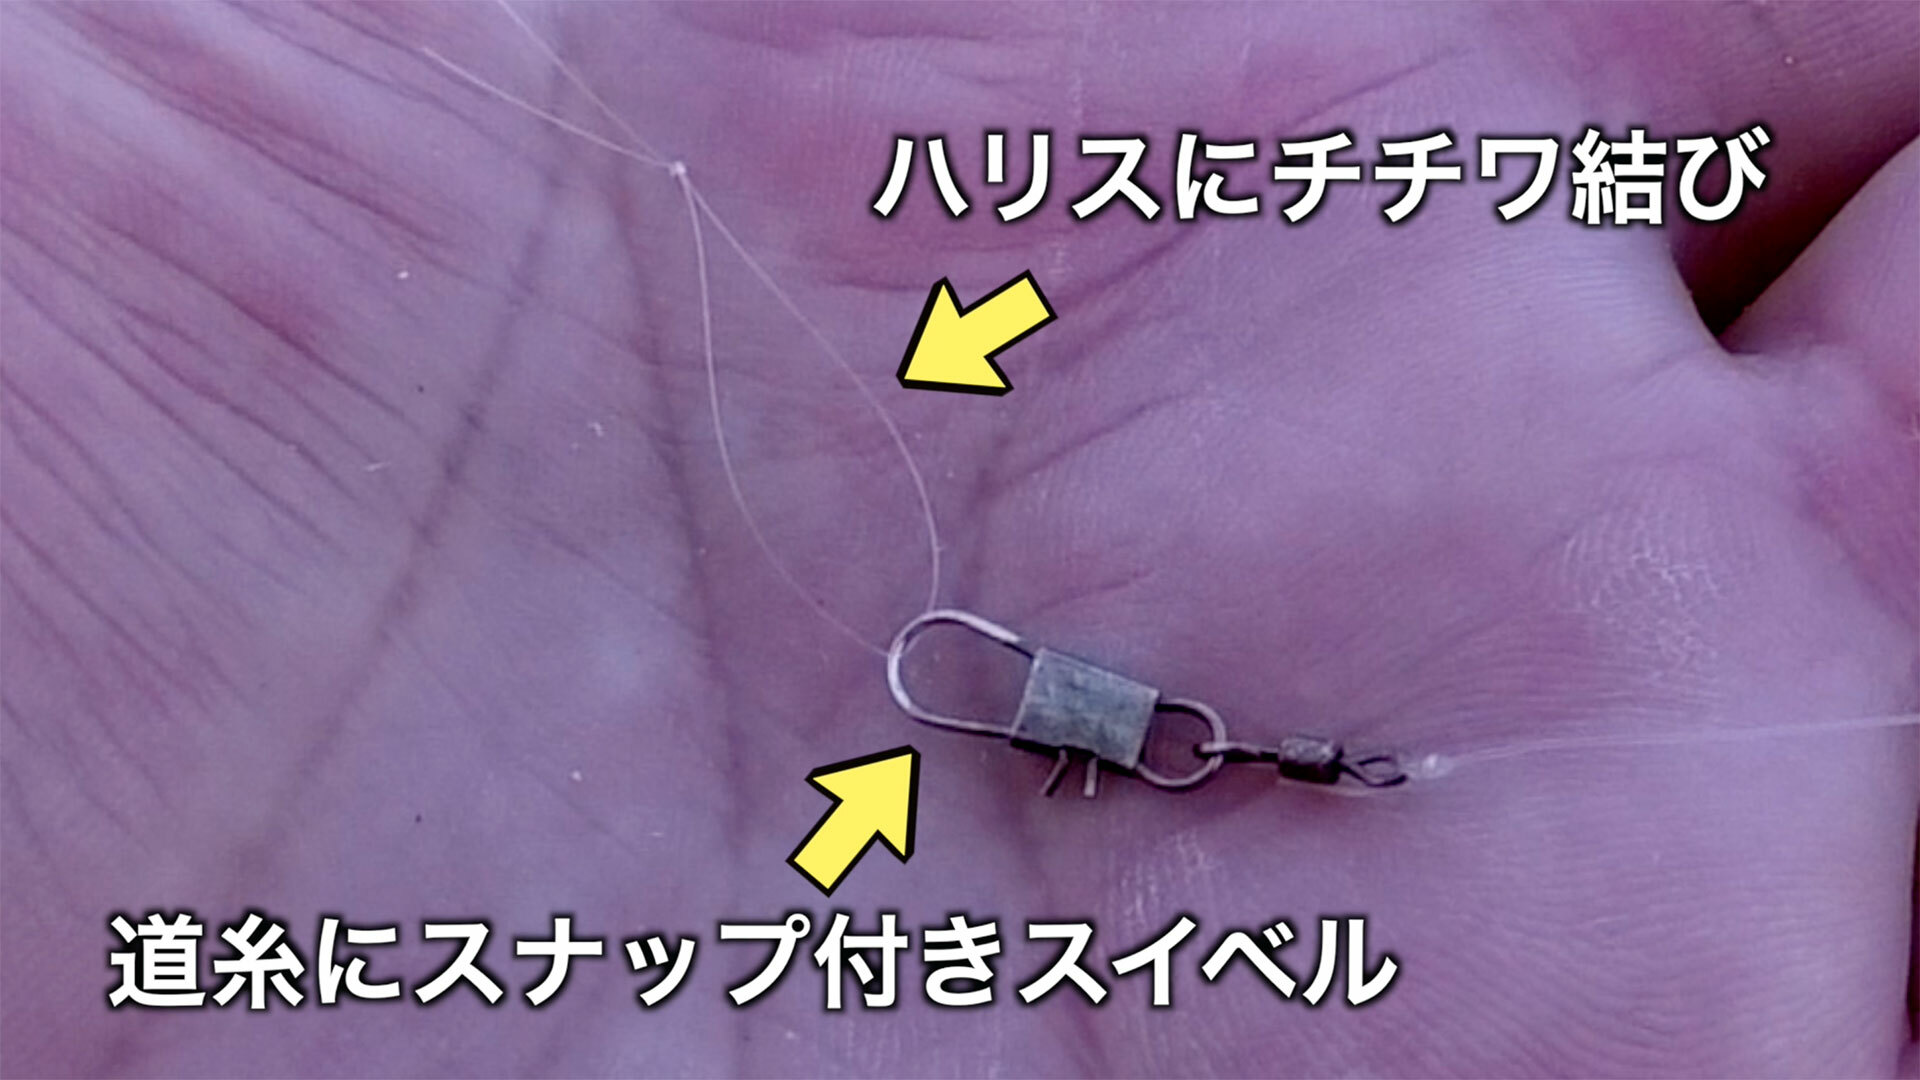 釣り針と道糸はスナップ付きスイベルでつなぎます